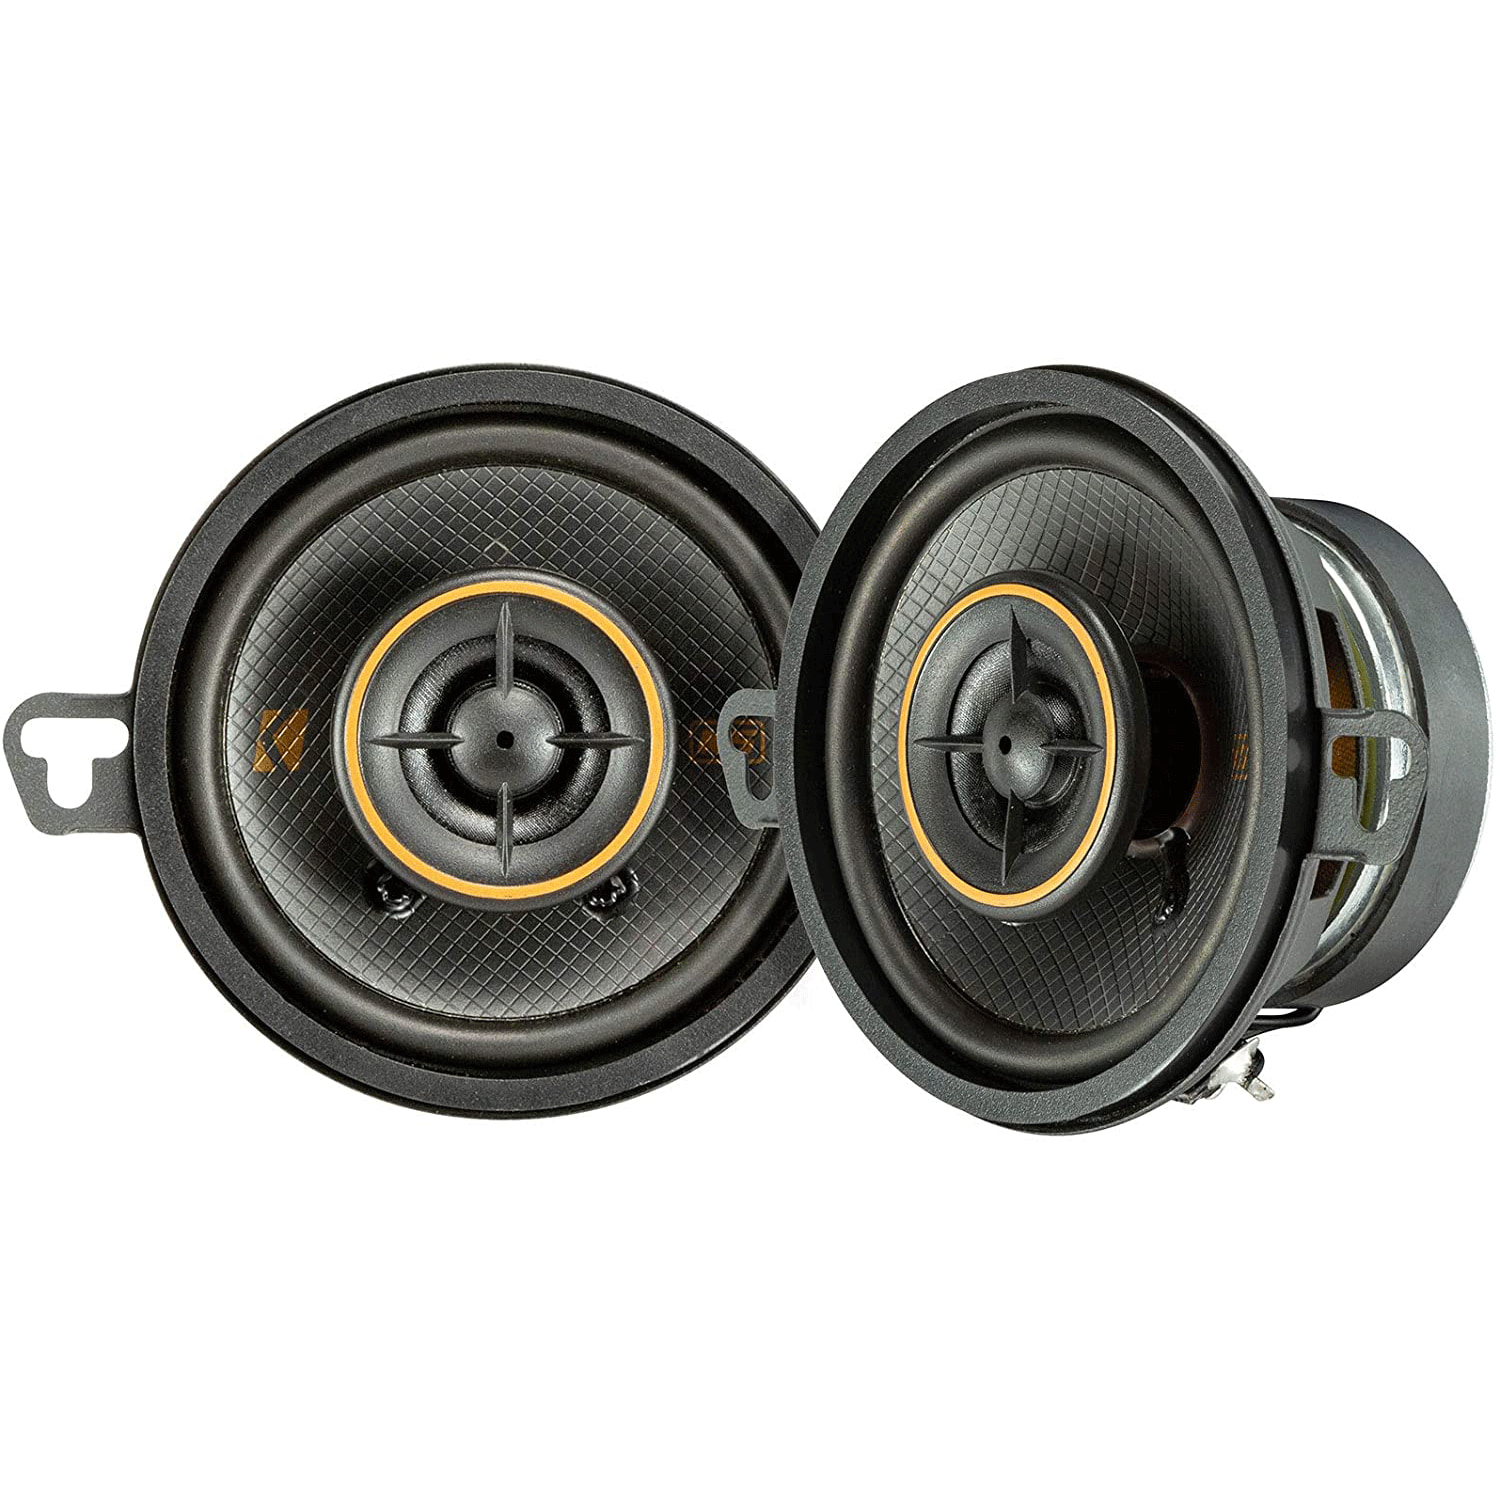 2 pcs 3.5inch 3.5" Universal woofer loudspeaker speaker repair foam surrounds 